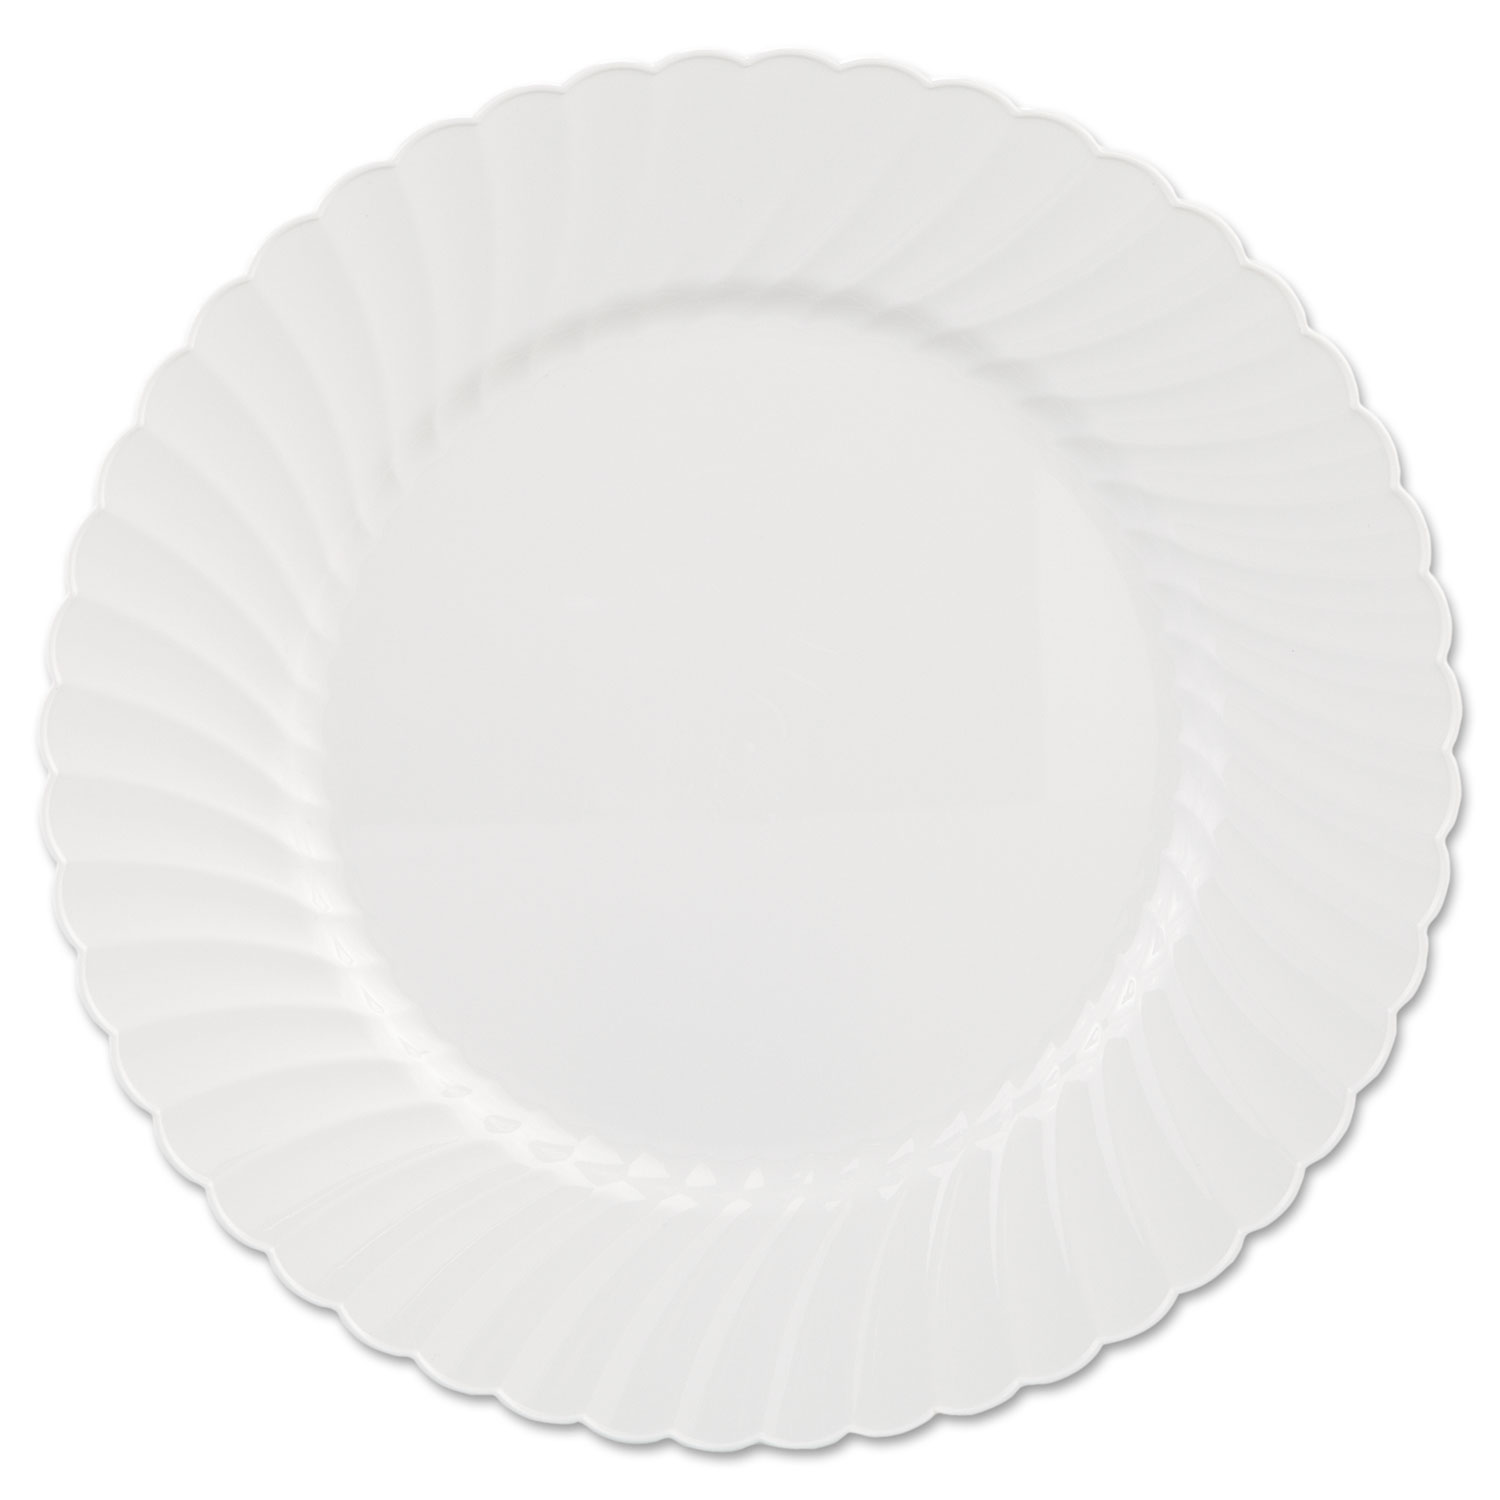  WNA WNA CW10144W Classicware Plates, Plastic, 10.25 in, White (WNACW10144W) 